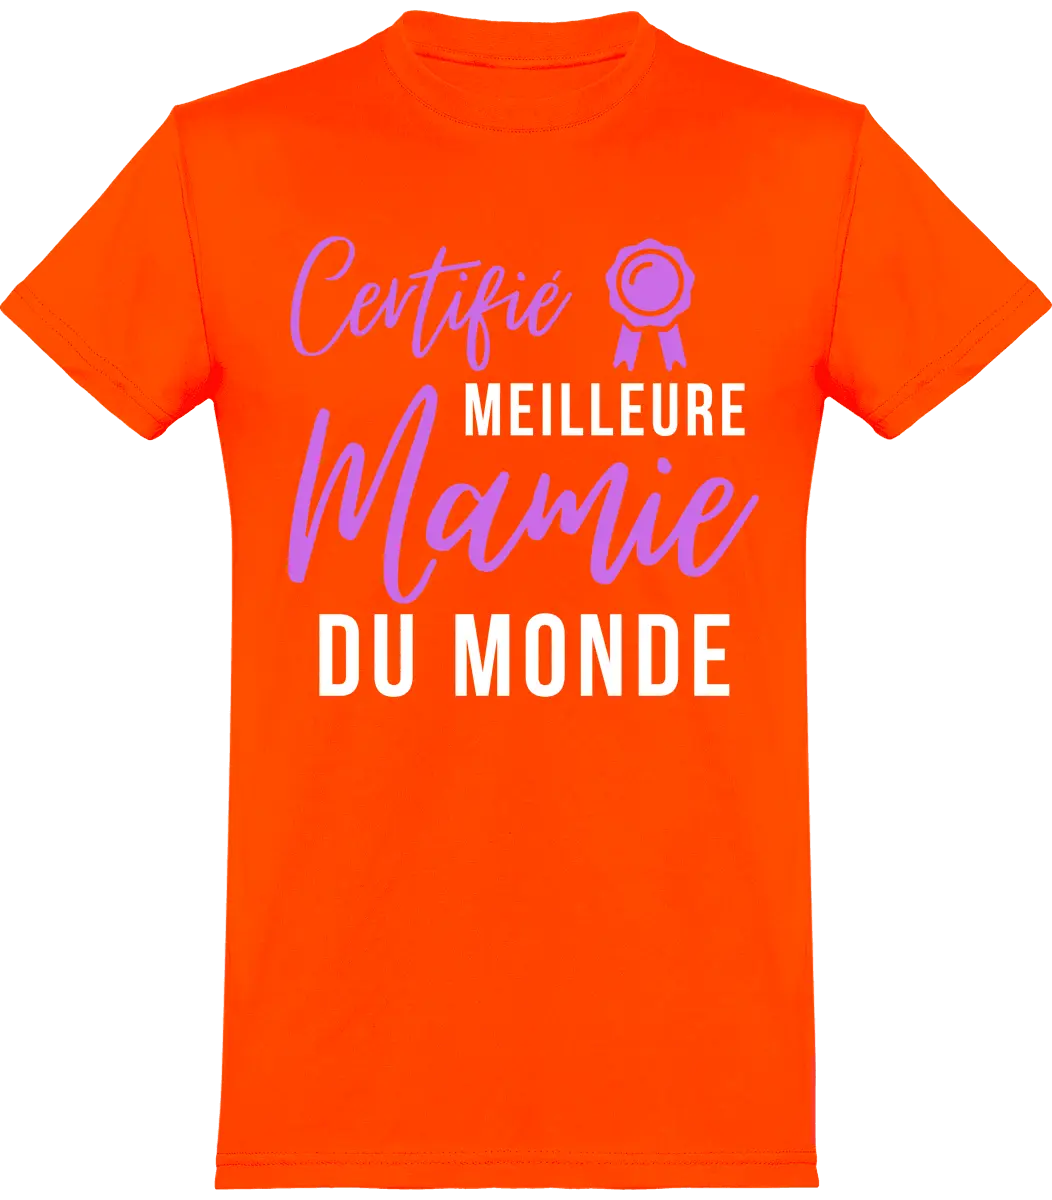 T-shirt mamie "certifié meilleur mamie du monde" | Mixte - French Humour